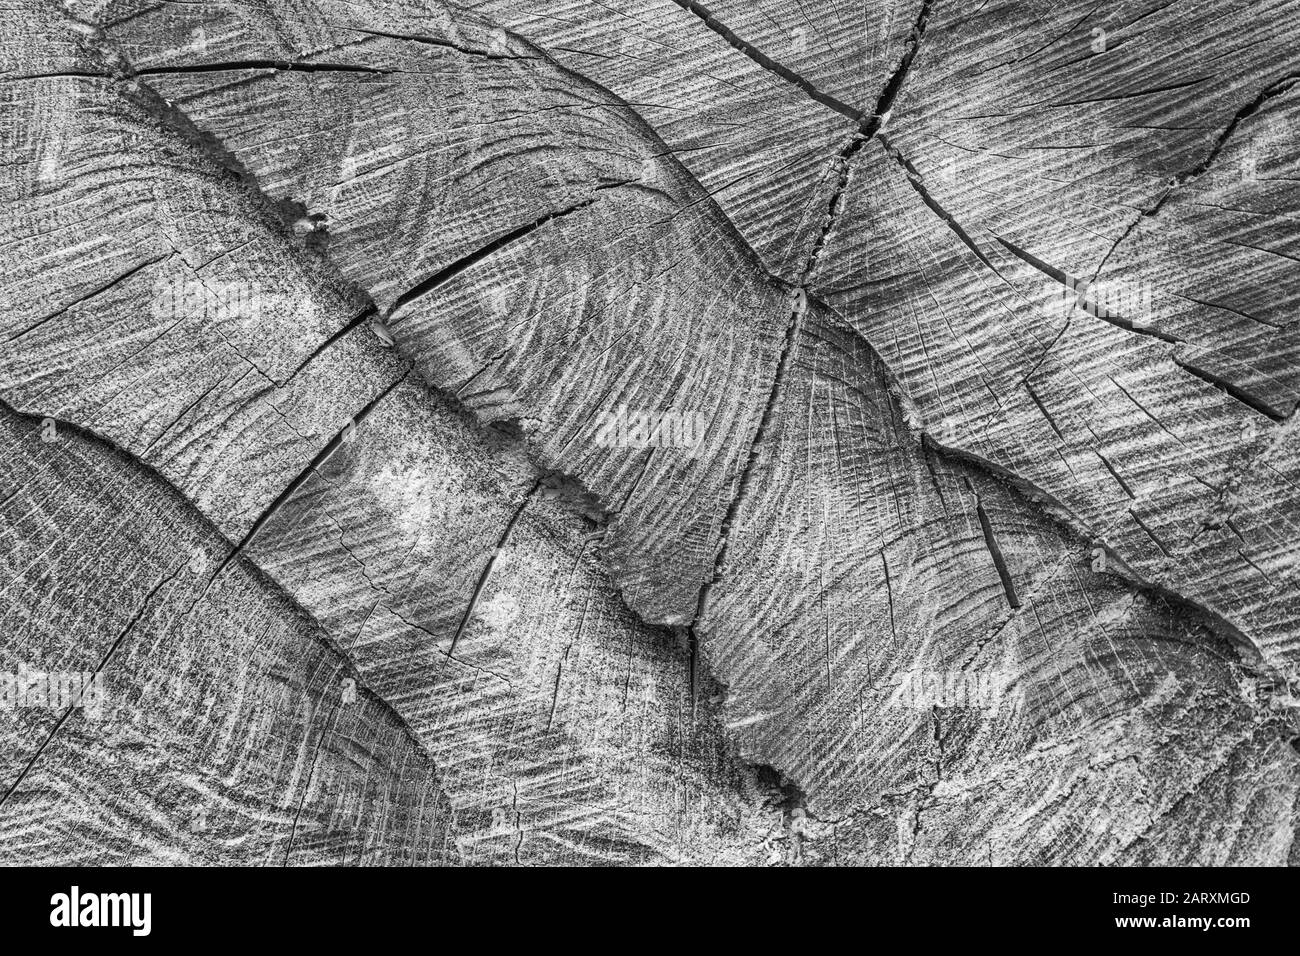 Gritty bianco nero di spaccature, crepe e fessure nella sezione trasversale dell'albero segato. Fessure, spaccature, e crepe apparendo, industria di legno. Albero Foto Stock